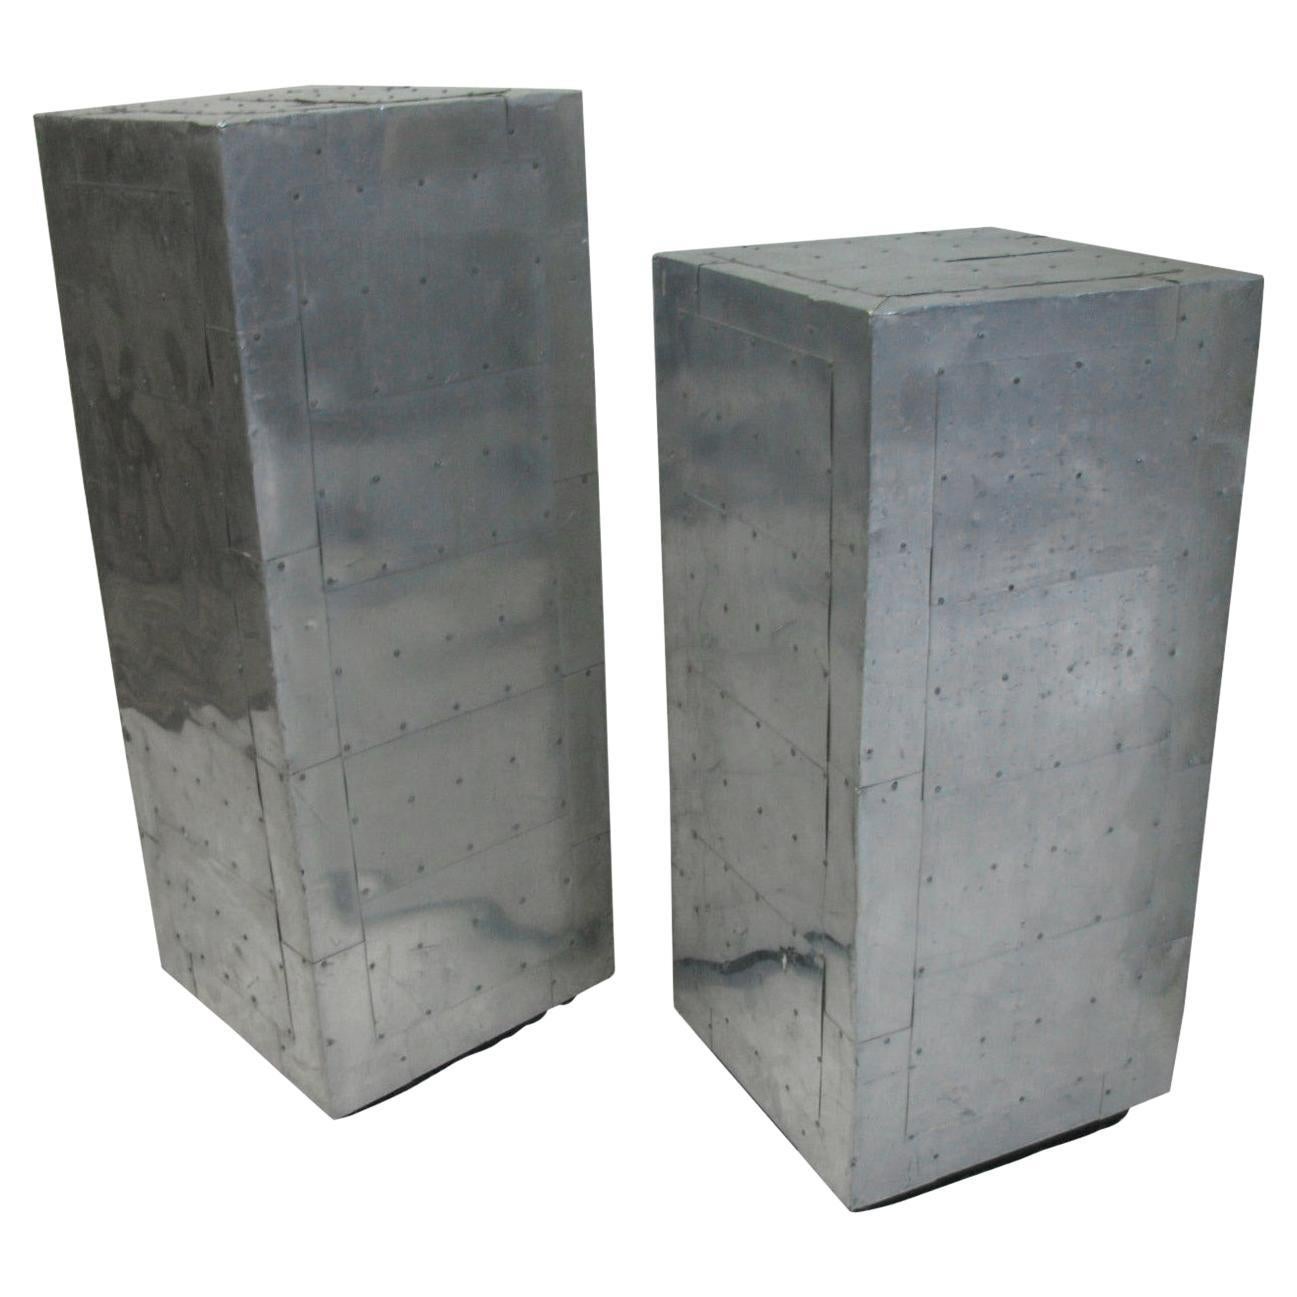 Pair of Mid Century Aluminum Industrial Pedestals